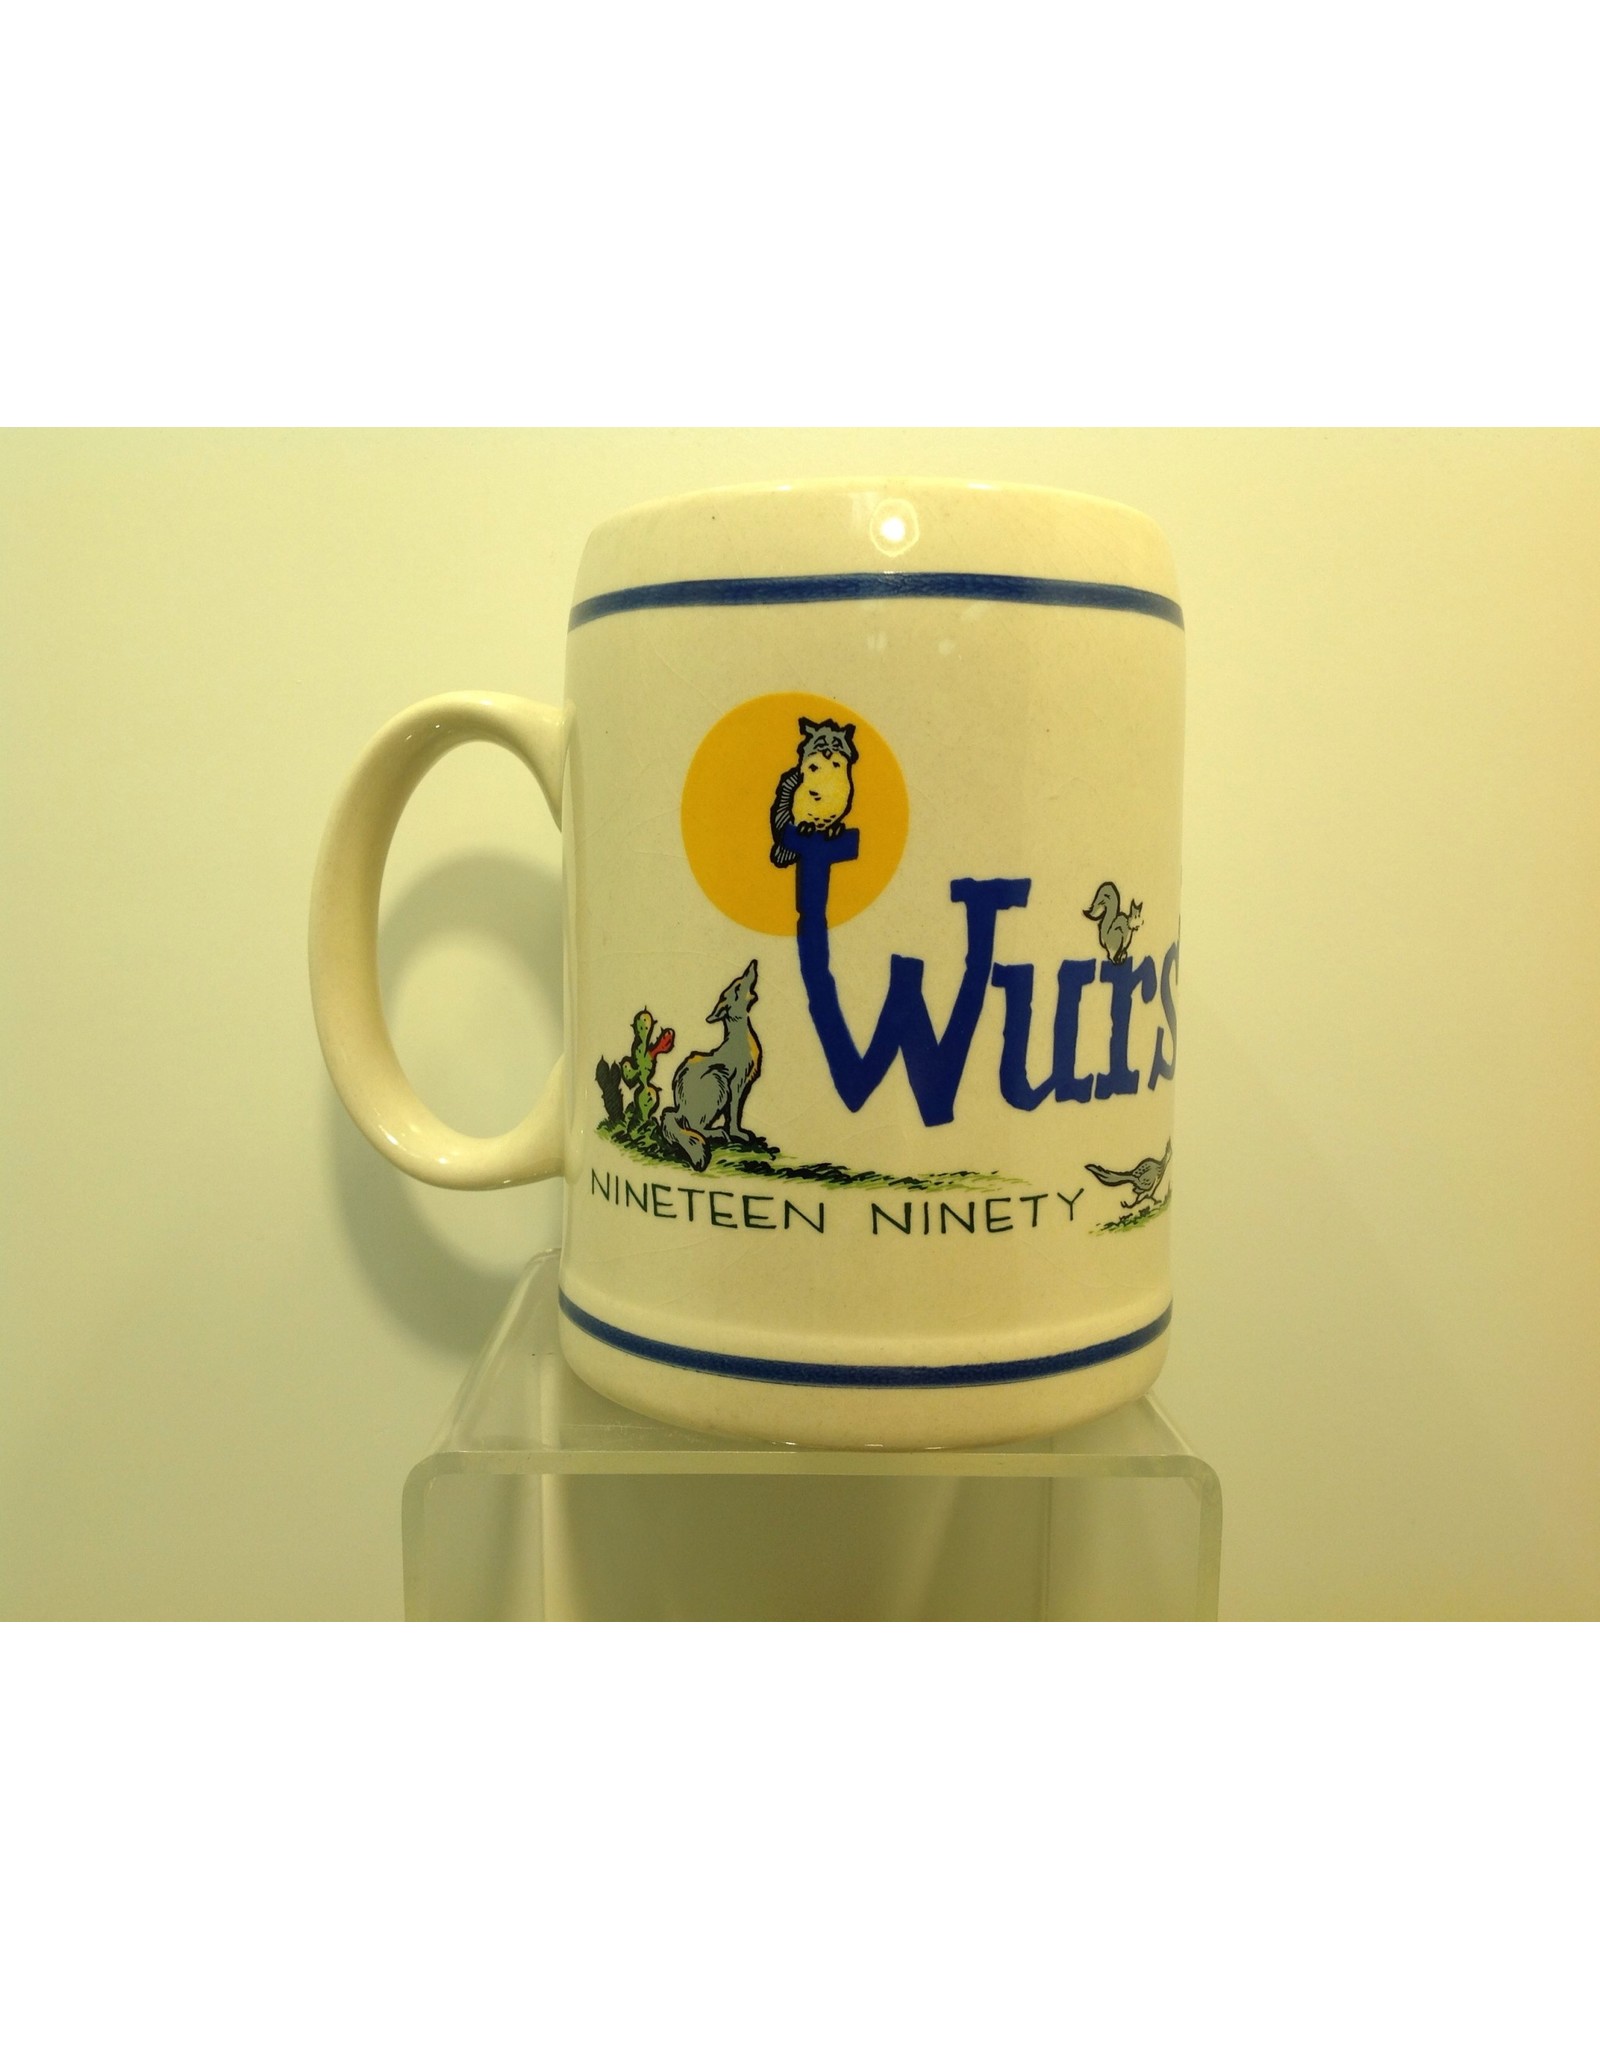 1990 WF .5ltr Mug